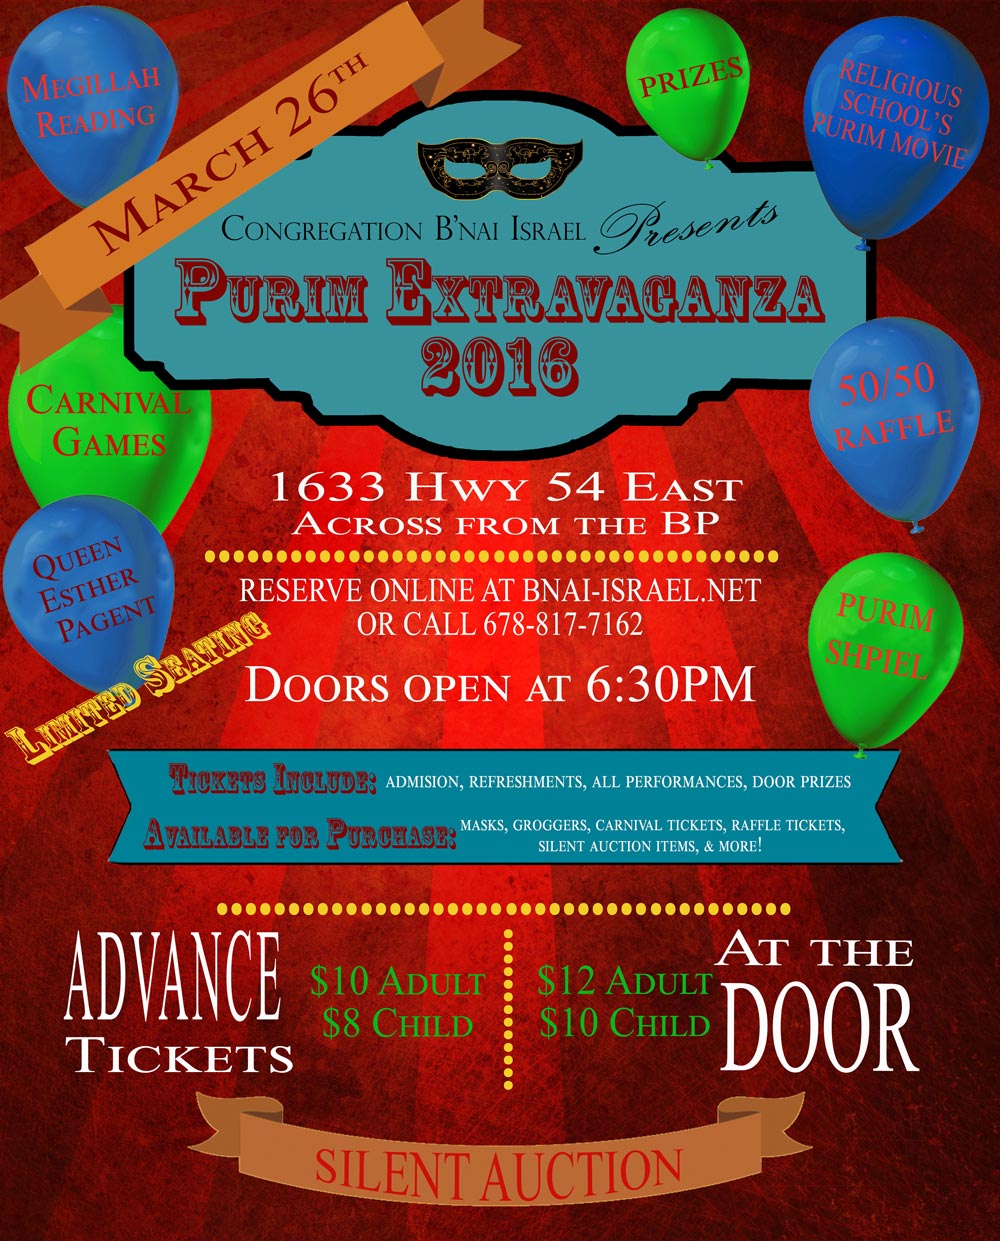 Purim Extravaganza 2016 flyer